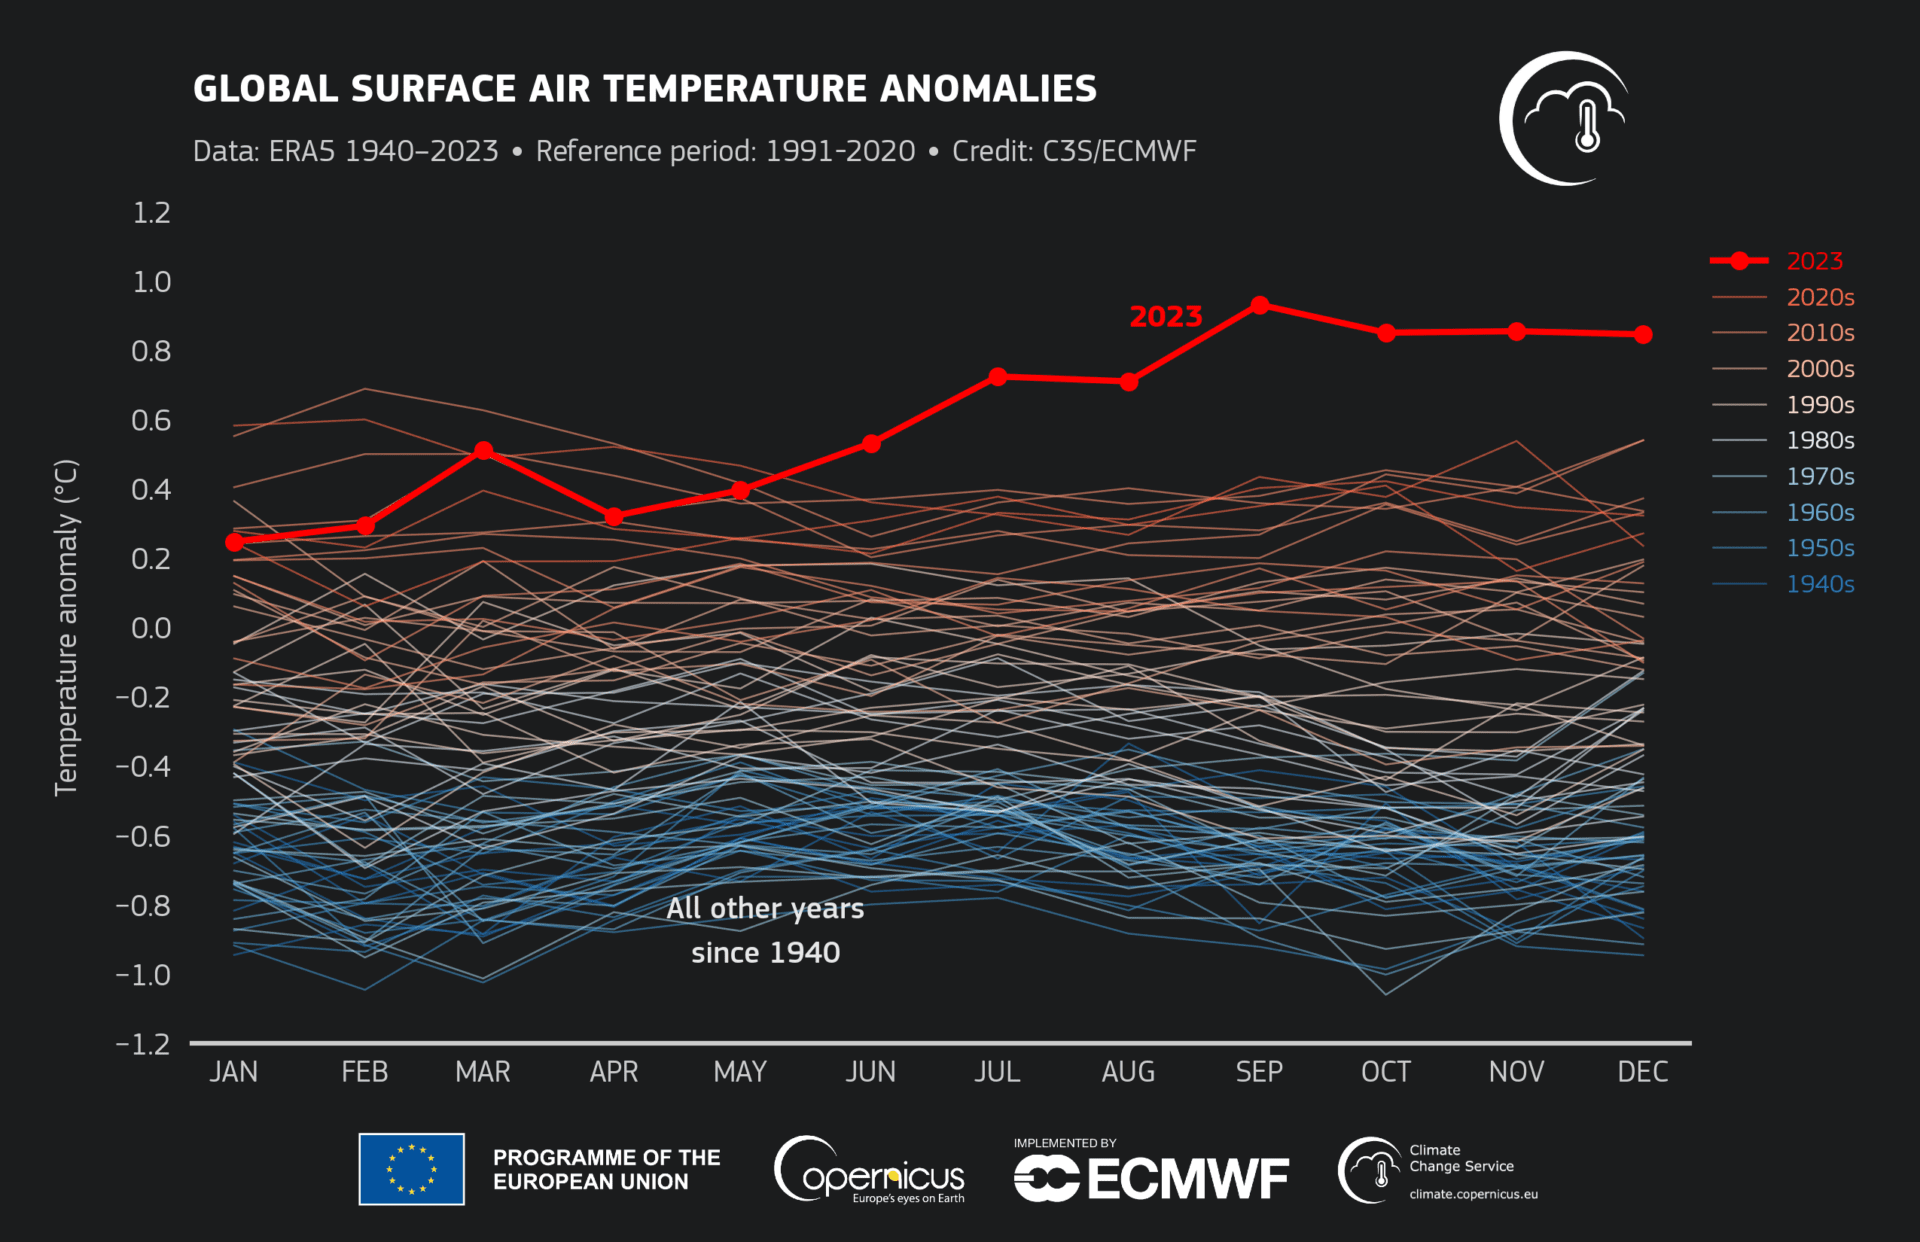 Wykresy obrazujące średnie temperatury powierzchniowe: Global surface temperature: increase above pre-industrial level (1850–1900). fot. C3S/ECMWF / Modyfikacje: Demagog